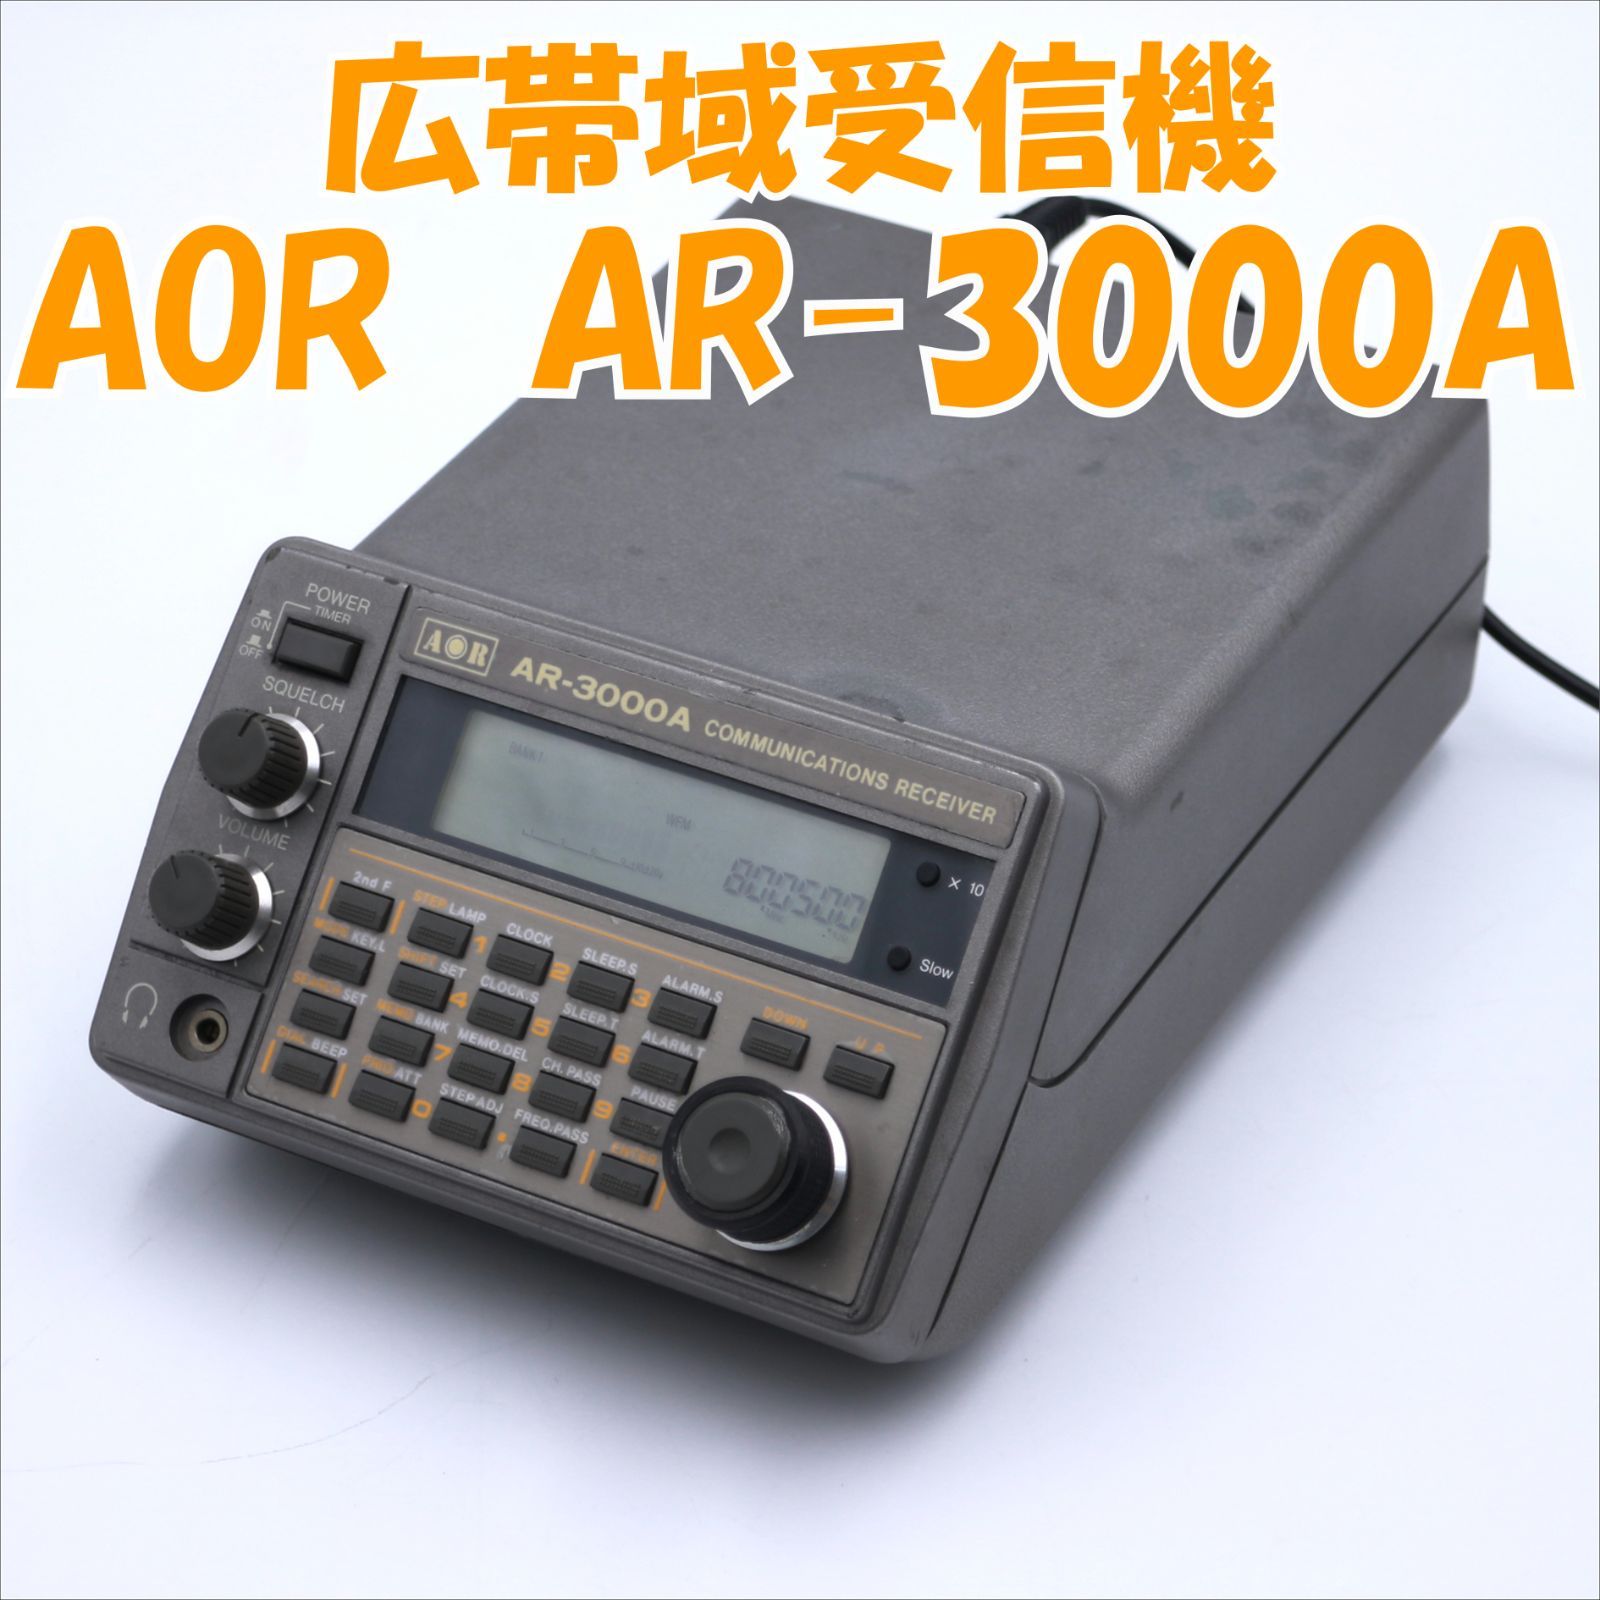 □□難あり□□ AOR AR-3000 広帯域受信機 - www.tigerwingz.com